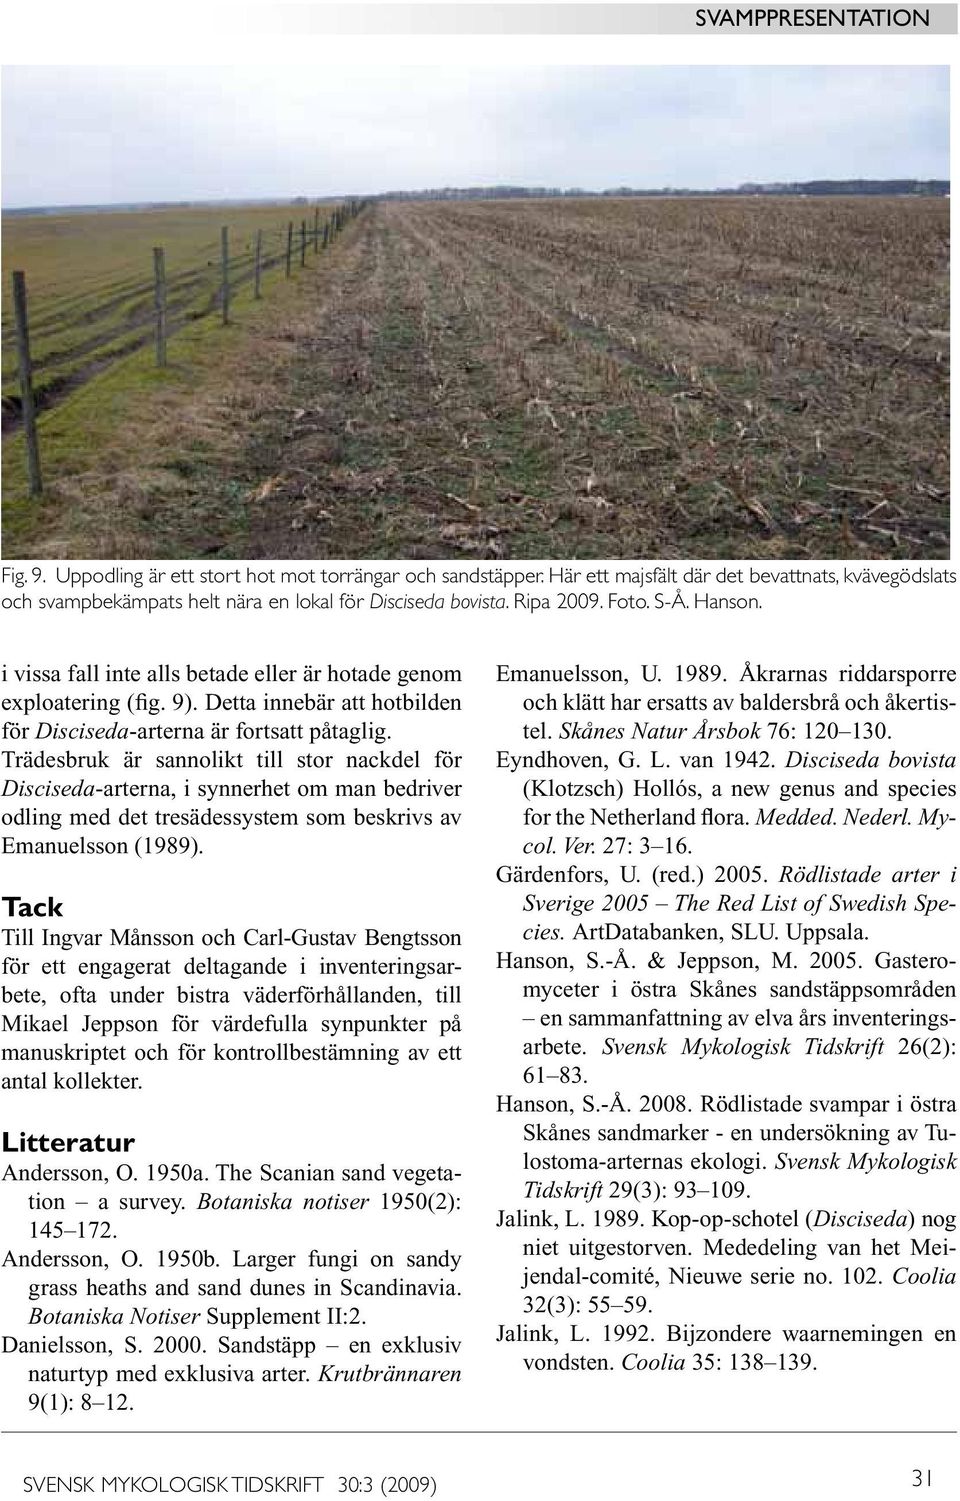 Trädesbruk är sannolikt till stor nackdel för Disciseda-arterna, i synnerhet om man bedriver odling med det tresädessystem som beskrivs av Emanuelsson (1989).